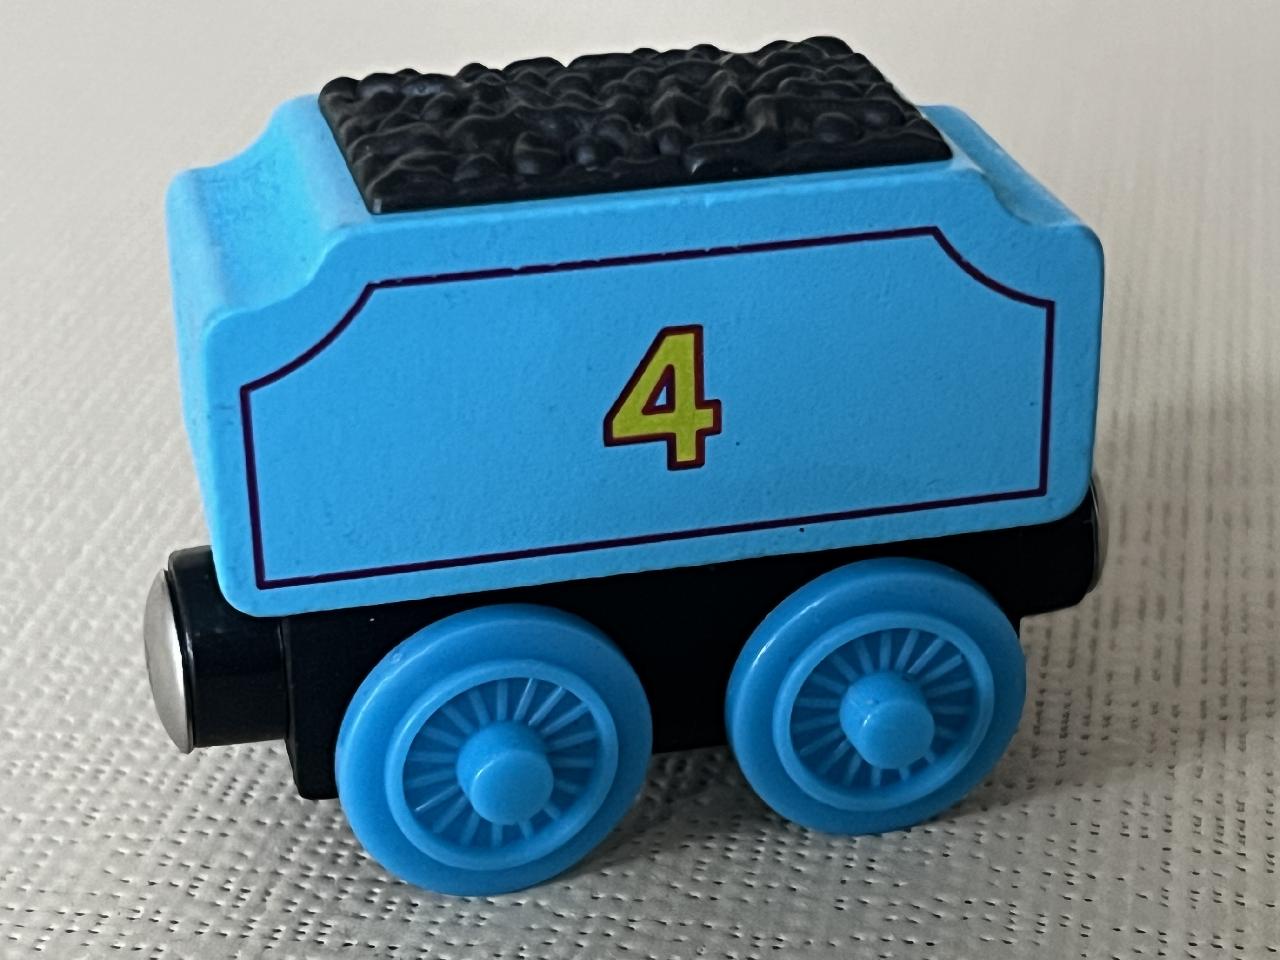 Dřevěný vagón uhlí modrý - do vláčkodráky